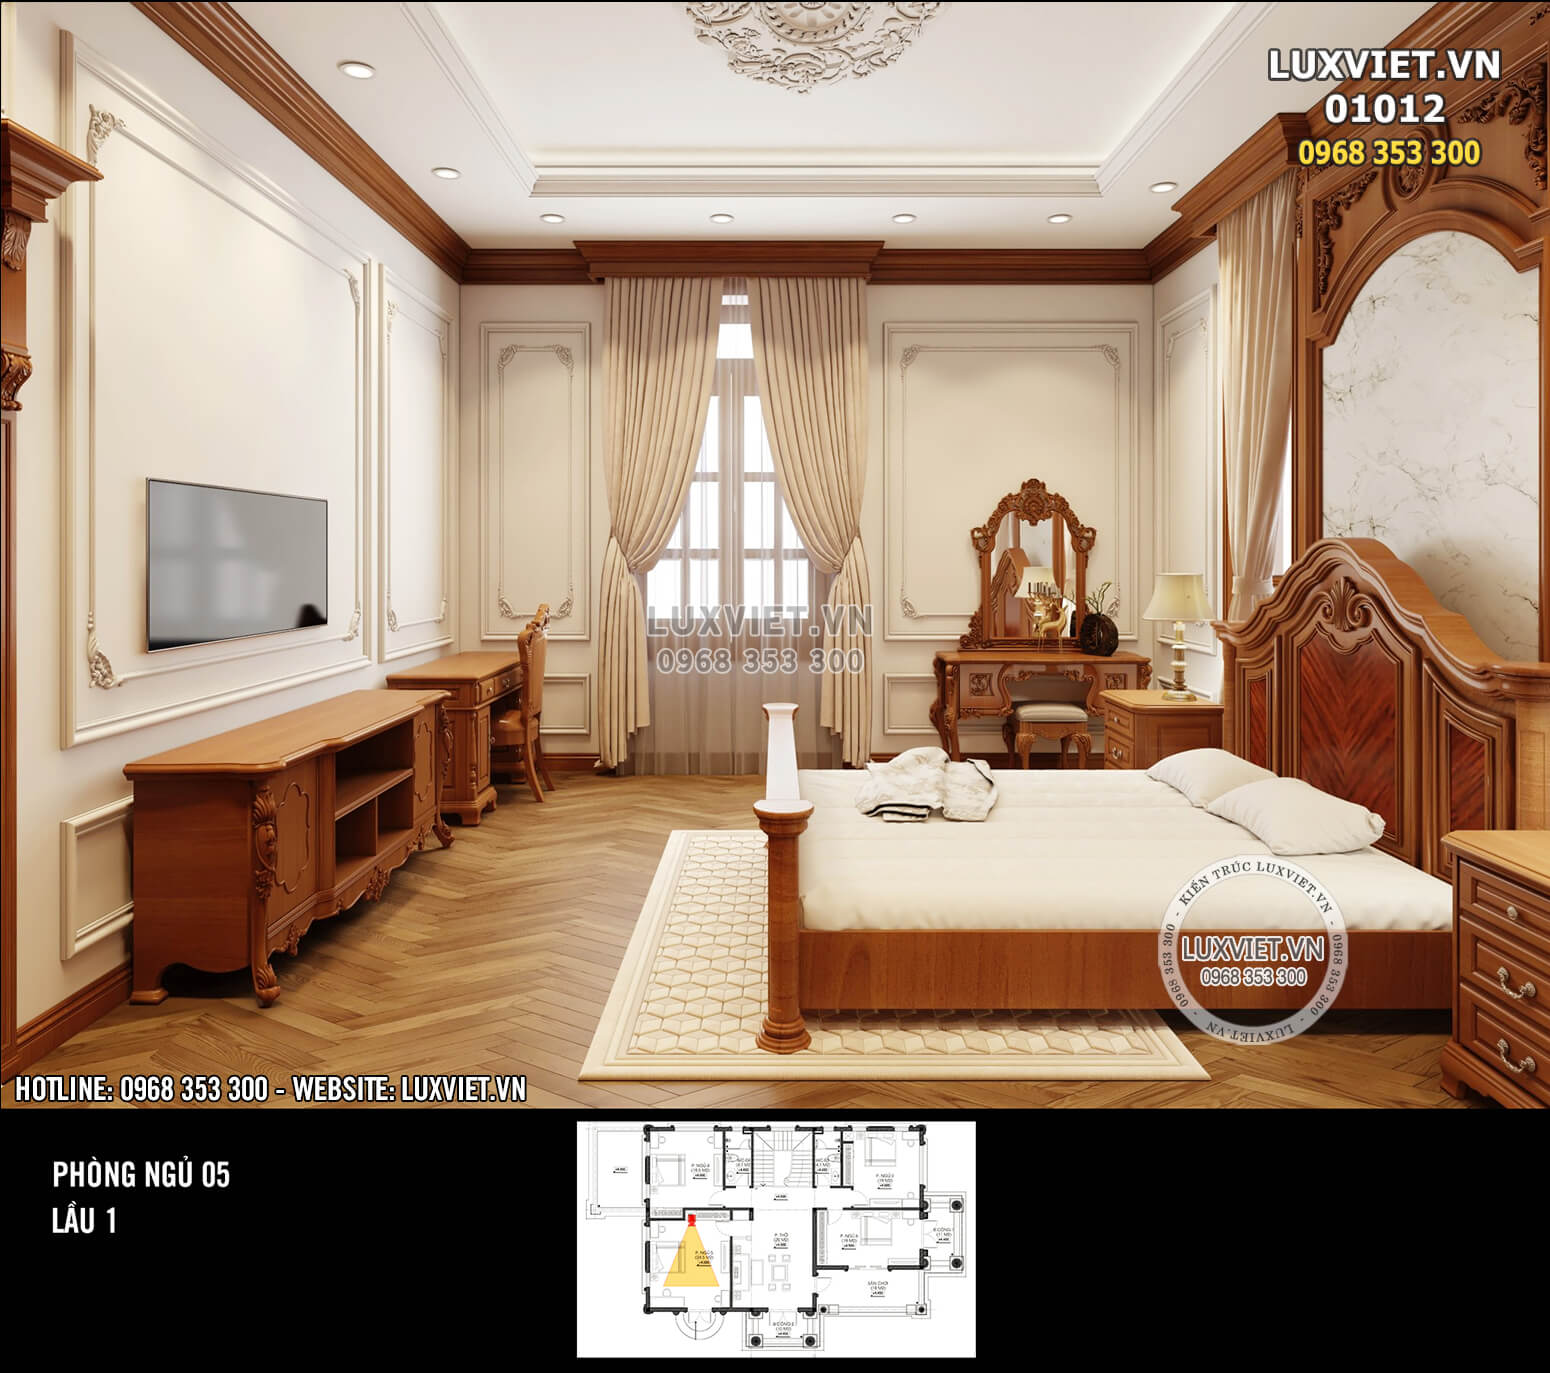 Hình ảnh: Thiết kế nội thất ốp gỗ tân cổ điển của phòng ngủ 5